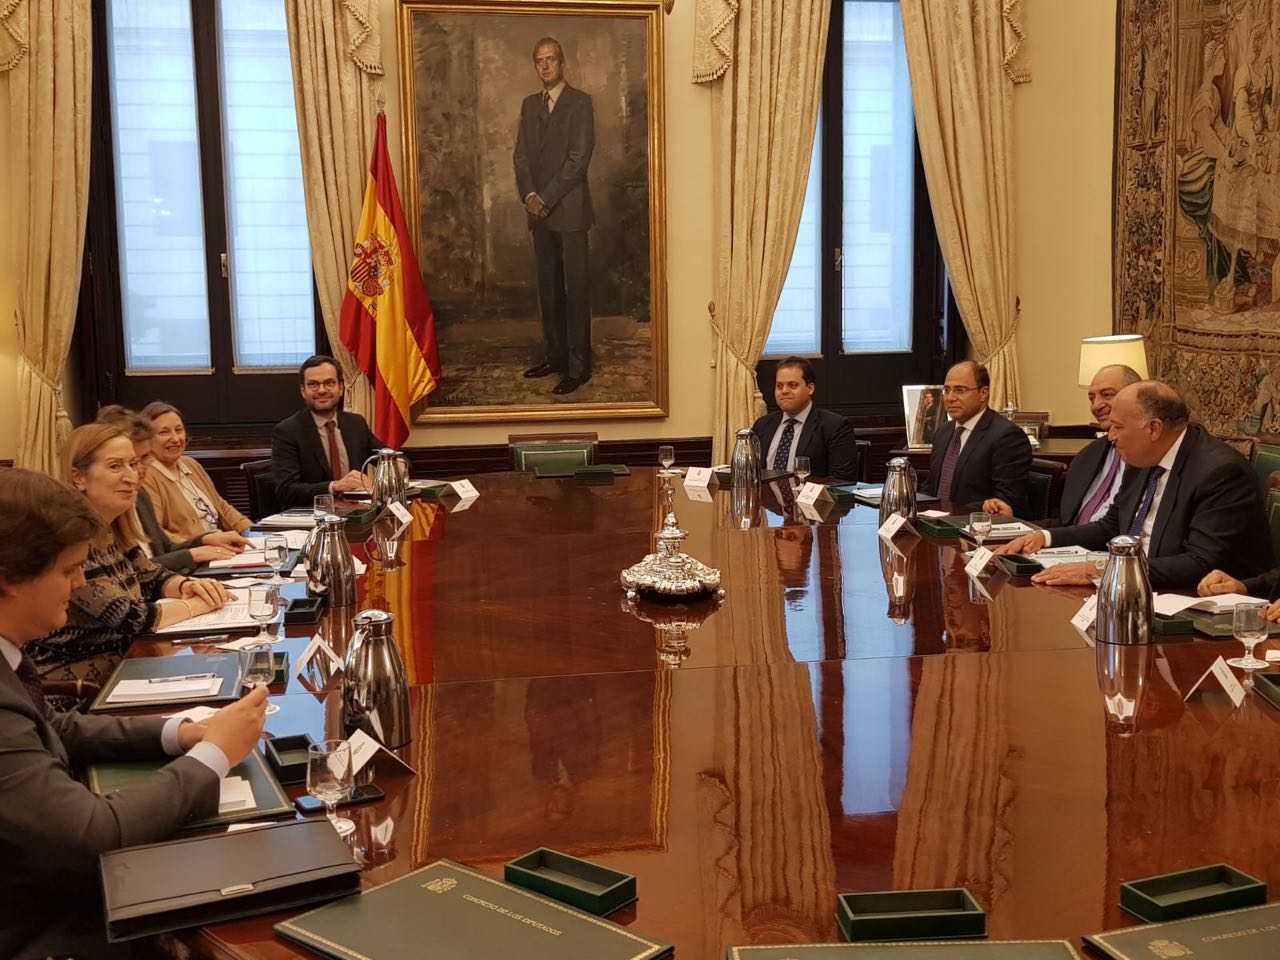   وزير الخارجية يختتم زيارته إلى إسبانيا بمقابلة رئيسة مجلس النواب الإسباني